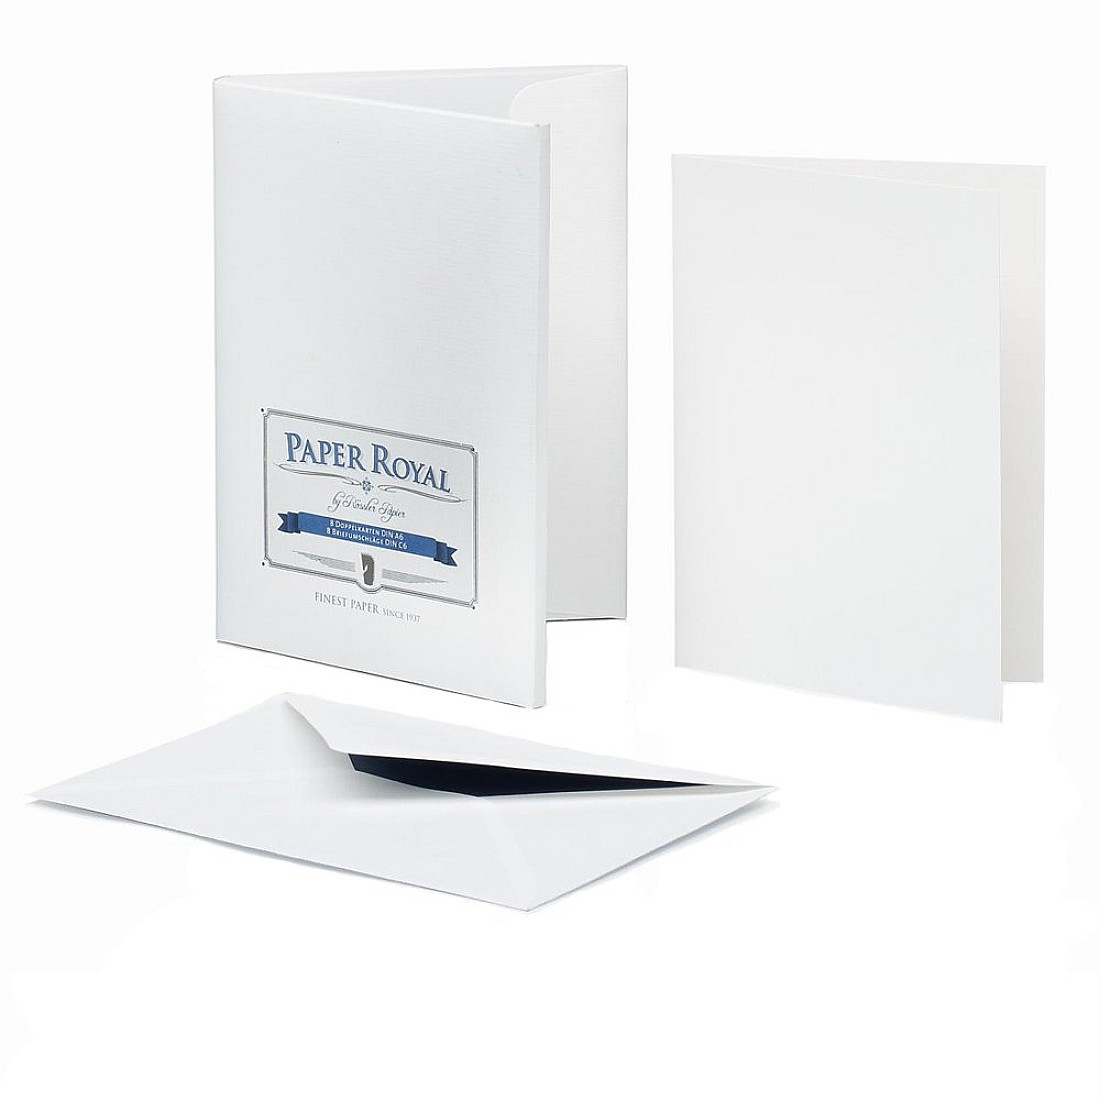 Rössler Papier Paper Royal White A6 Double Card per 20 Sheets